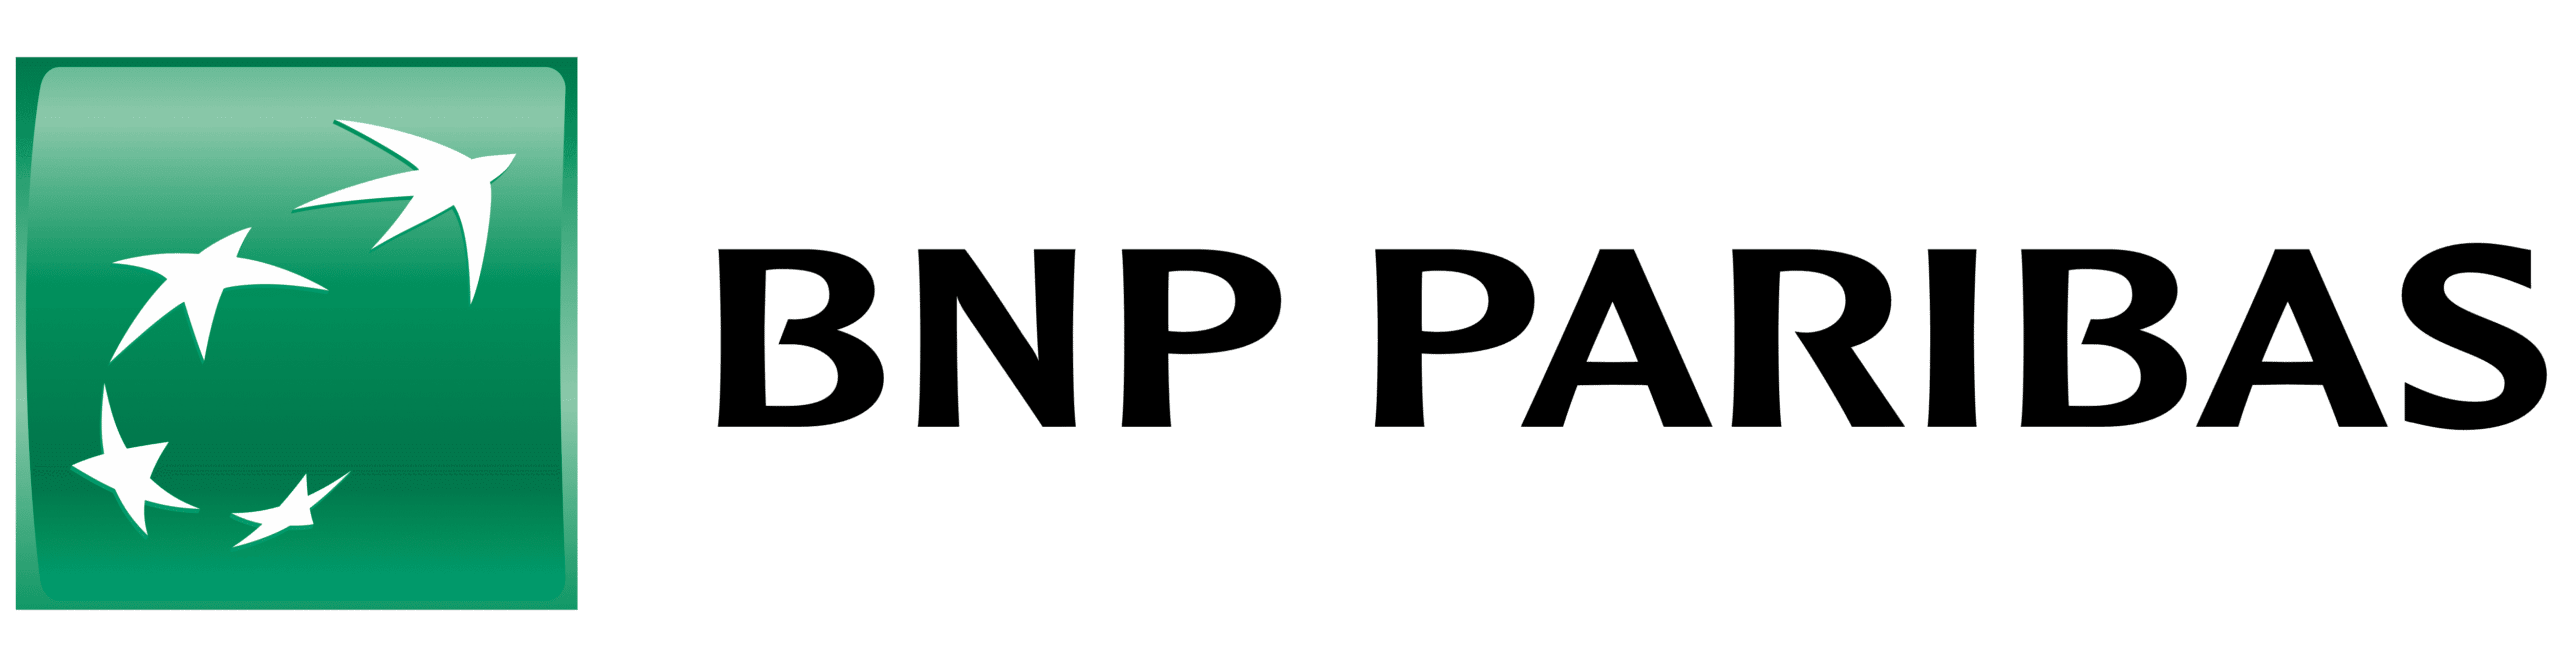 BNP Paribas – BNP NET